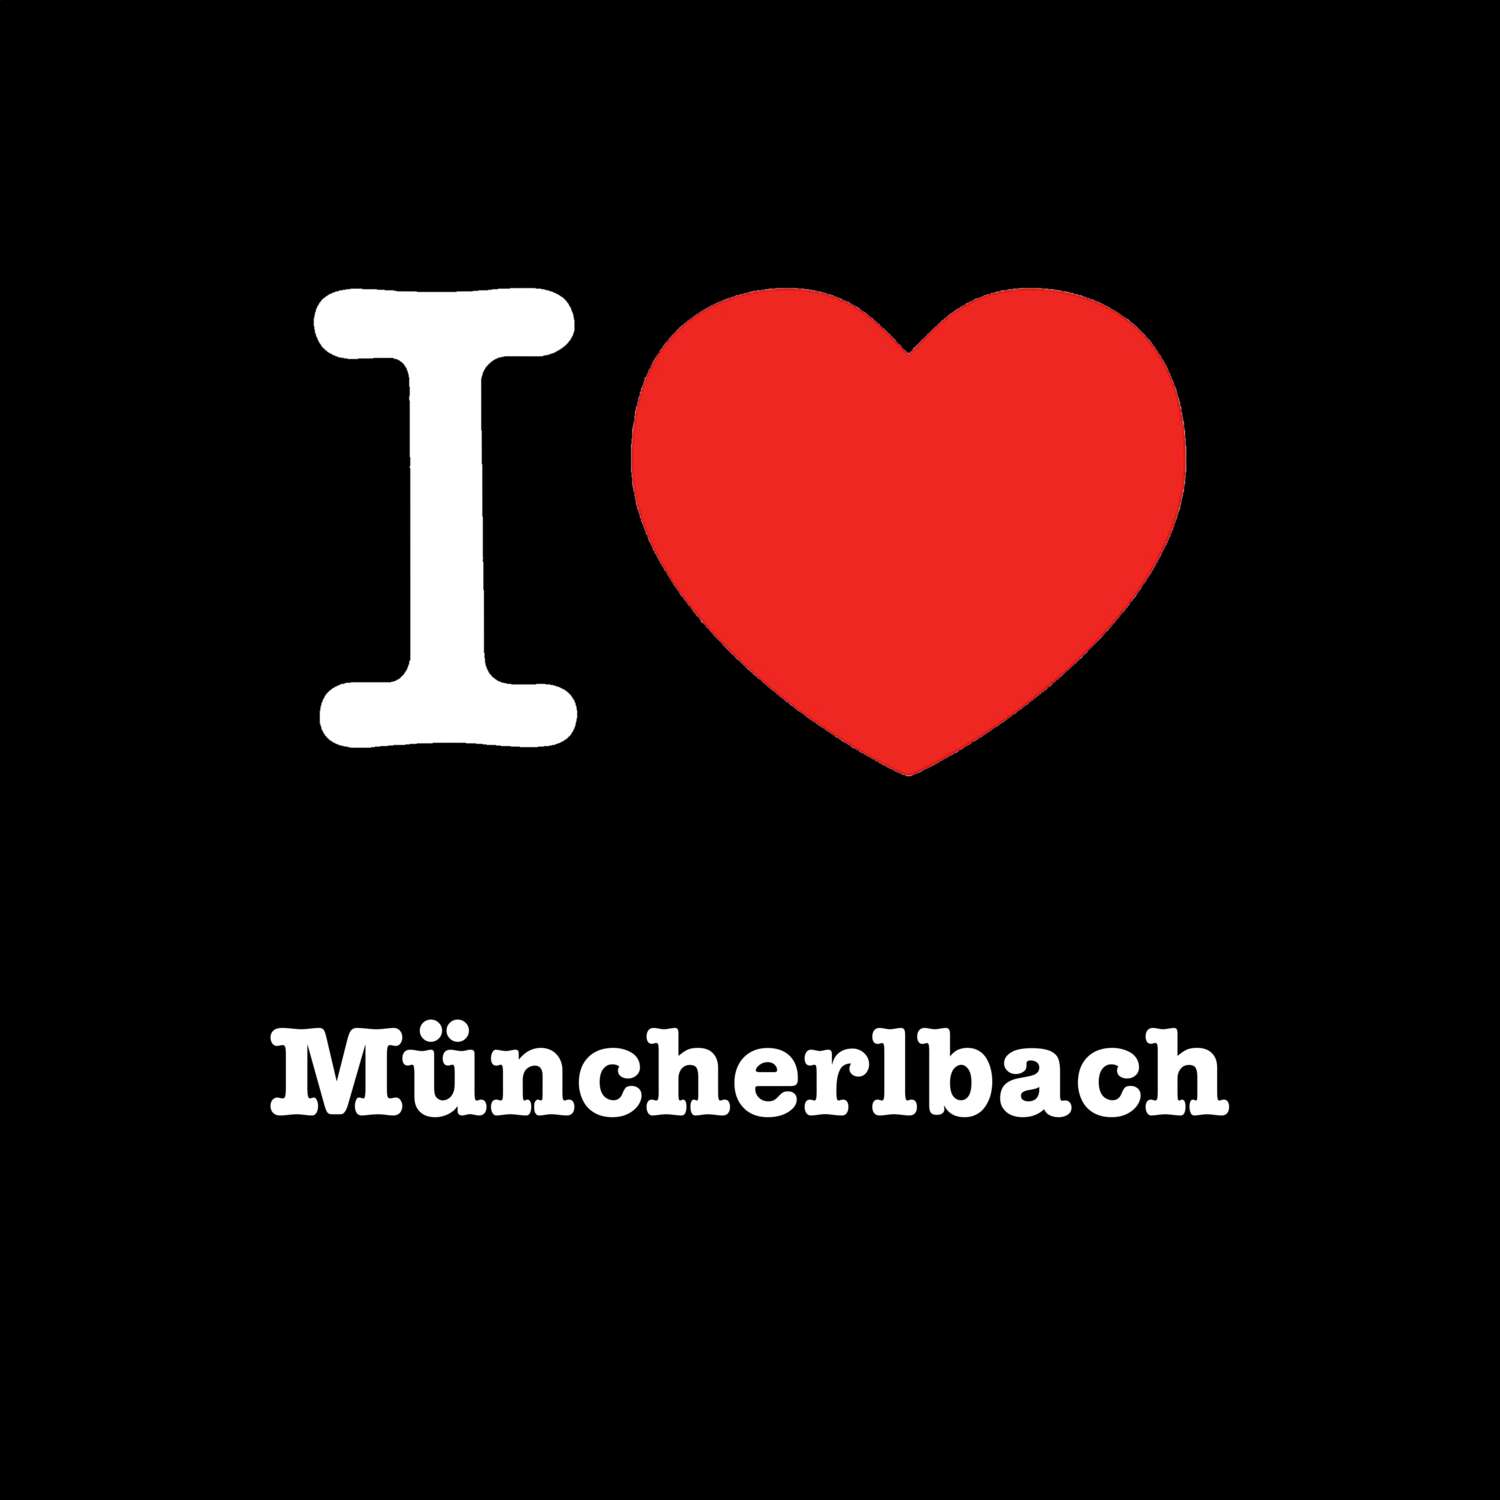 Müncherlbach T-Shirt »I love«